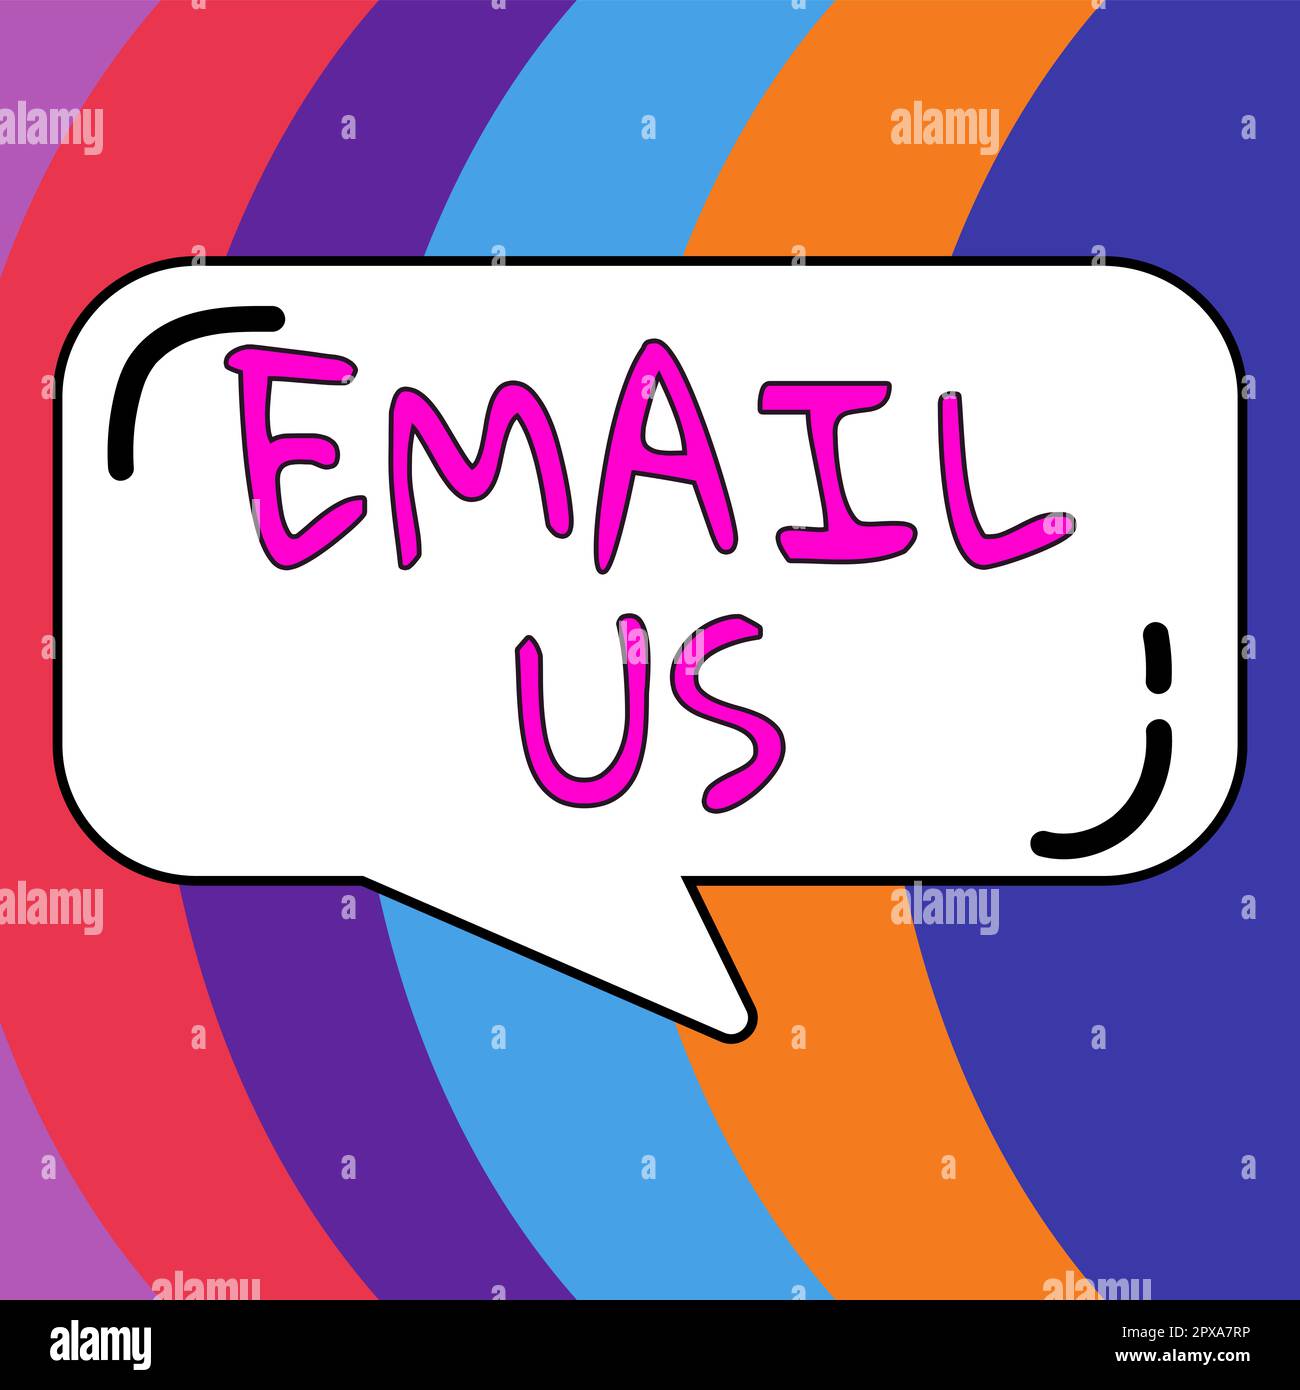 Texte signe montrant Email US, Internet concept envoi d'un message commercial à un groupe de personnes utilisant le courrier Banque D'Images